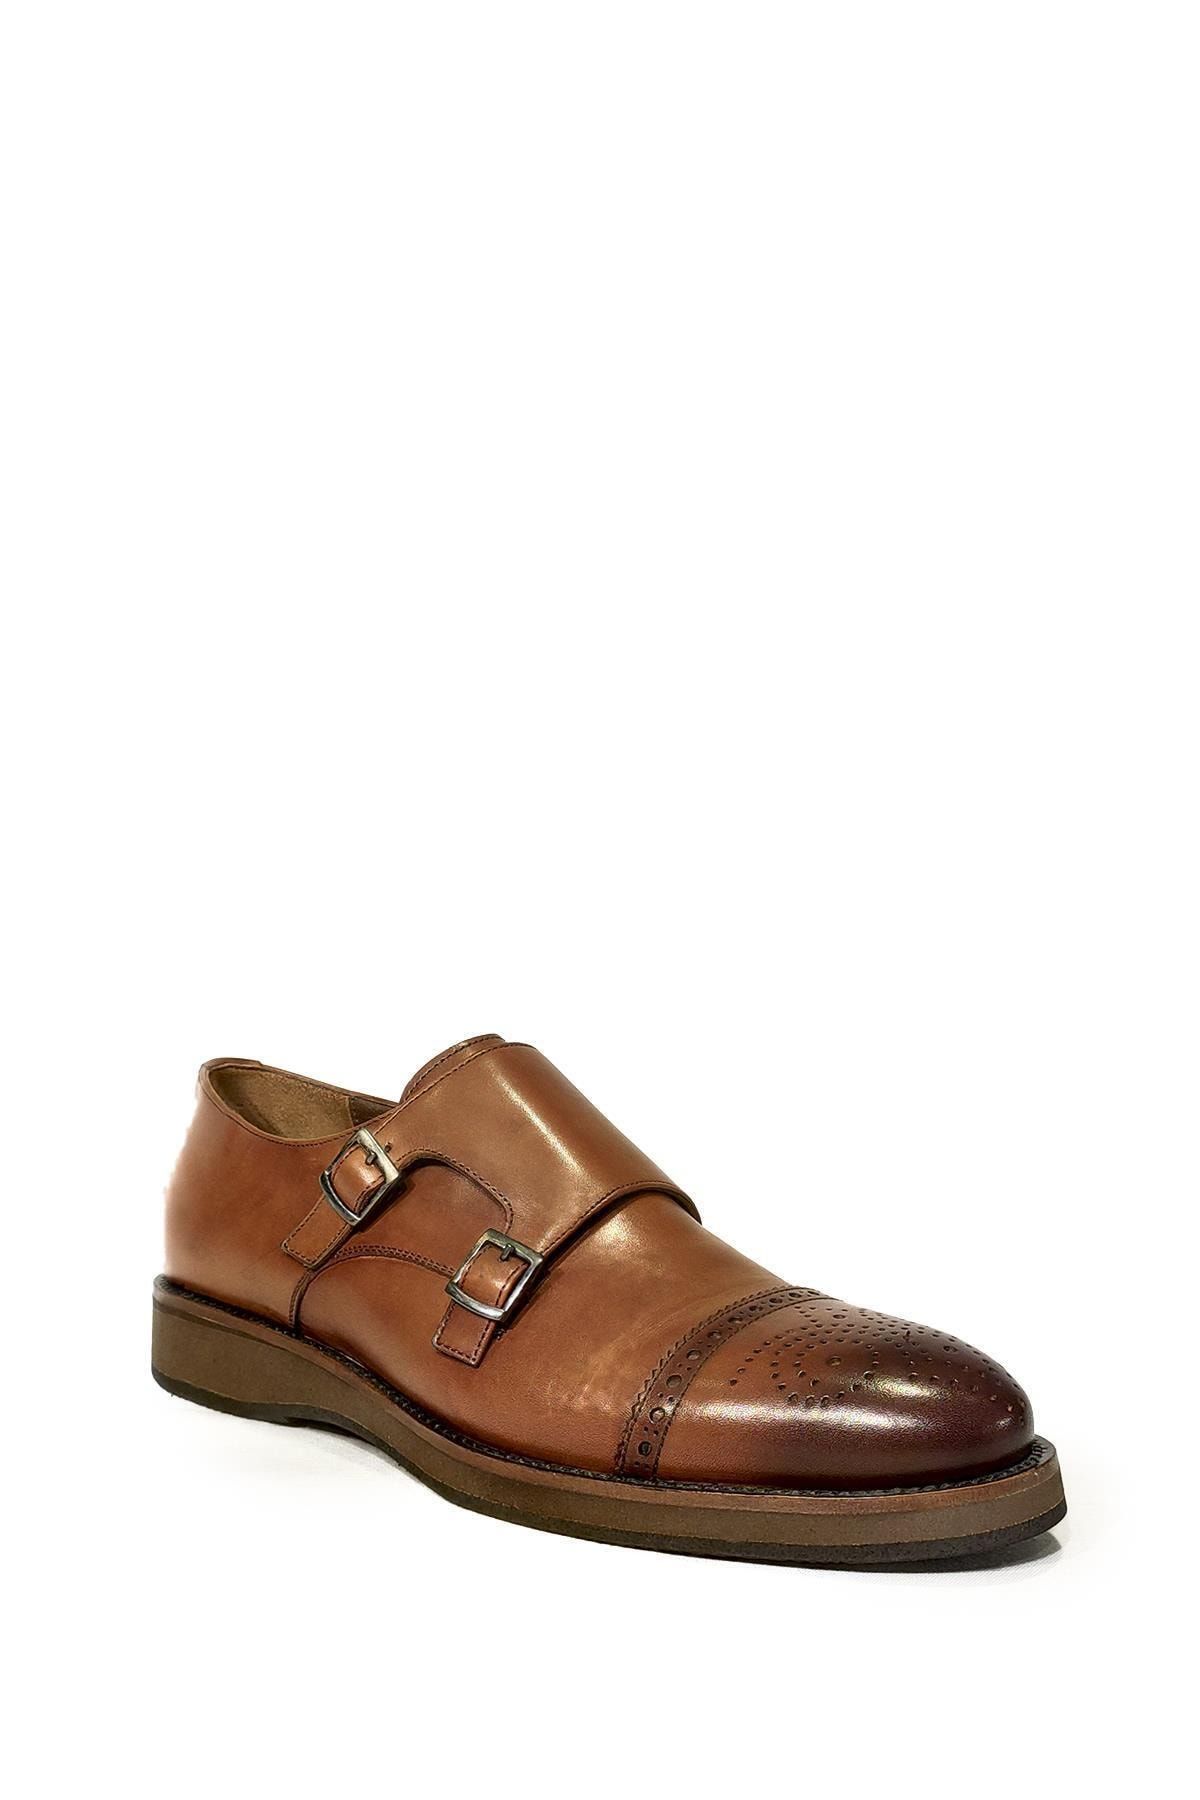 OGGI Erkek Kahverengi Klasik Ayakkabı Pol17y-029501